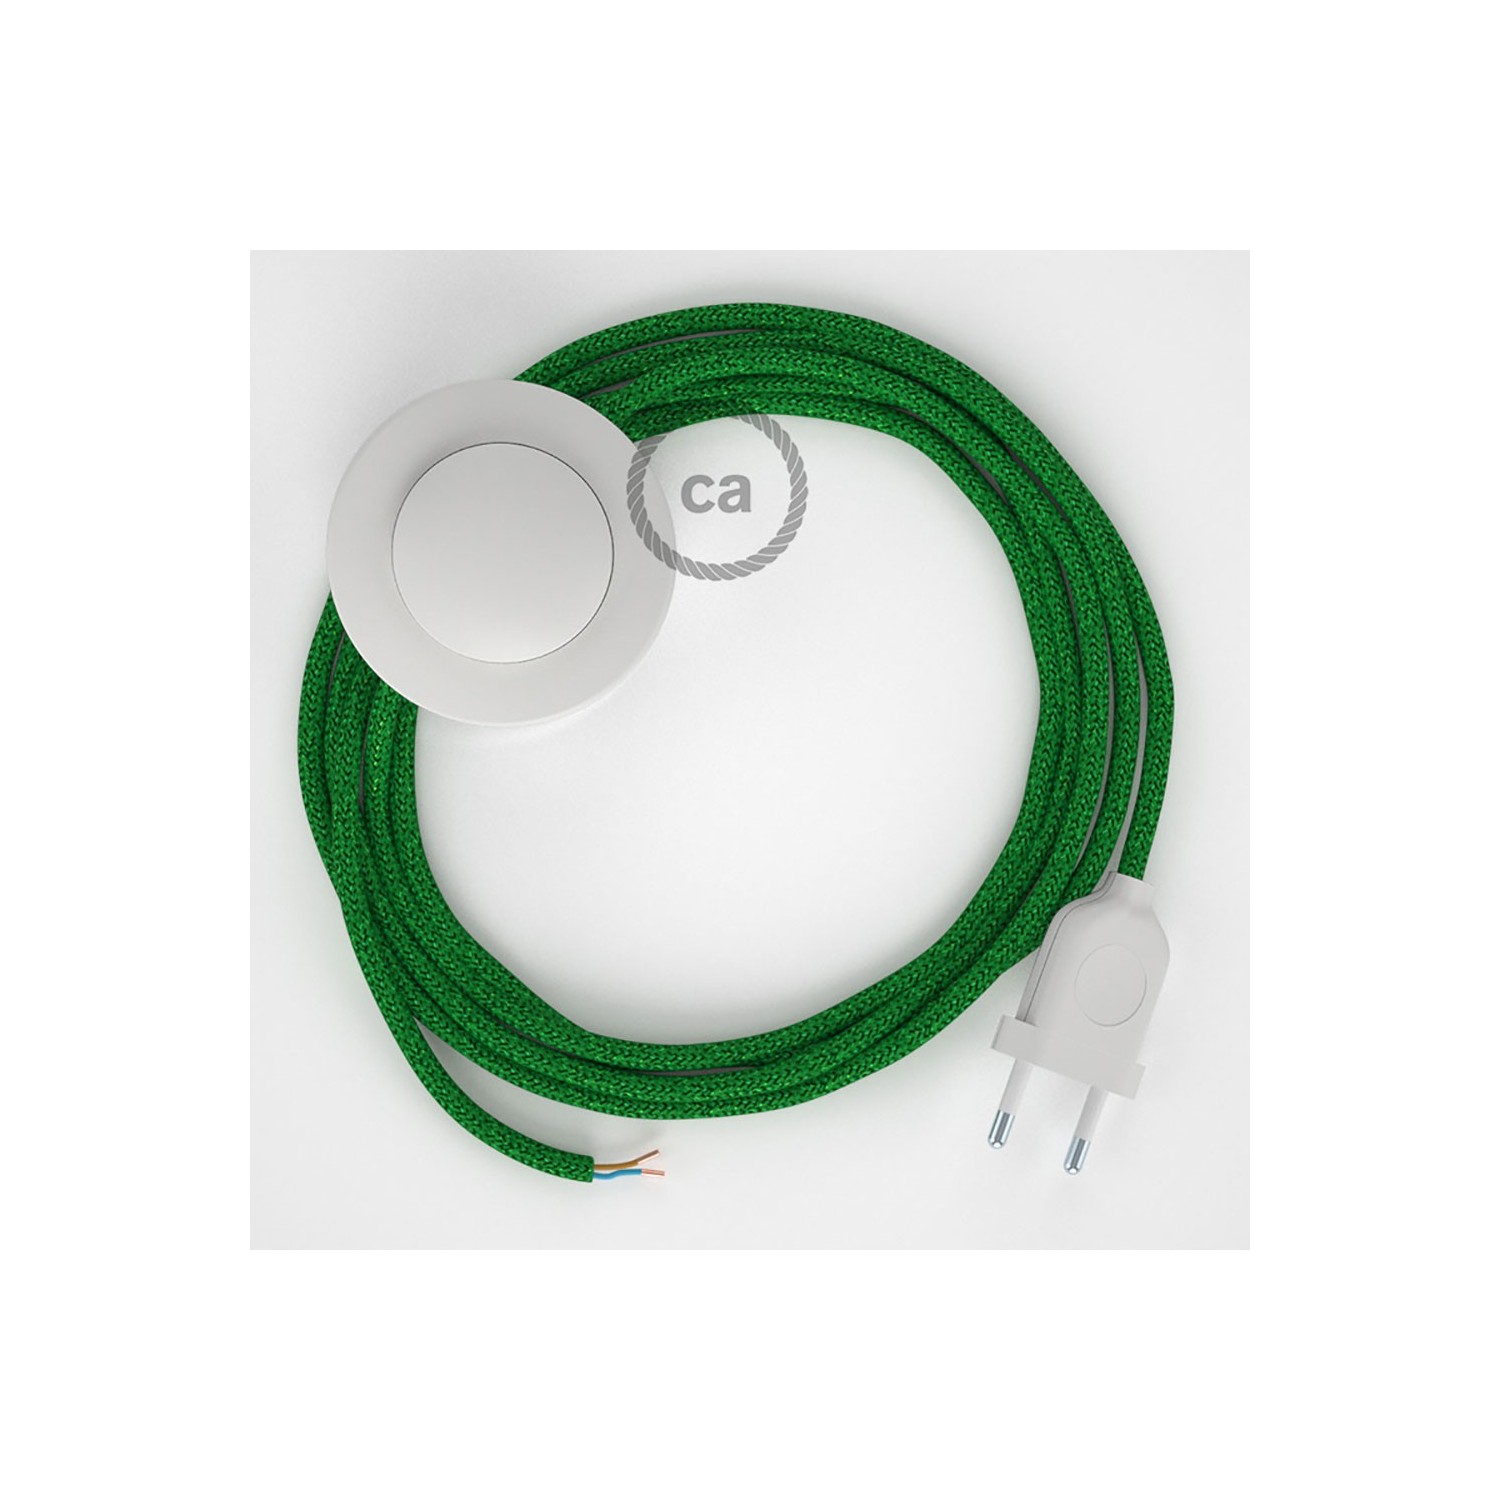 Stehleuchte Anschlussleitung RL06 Grün Geglittert Seideneffekt 3 m. Wählen Sie aus drei Farben bei Schalter und Stecke.